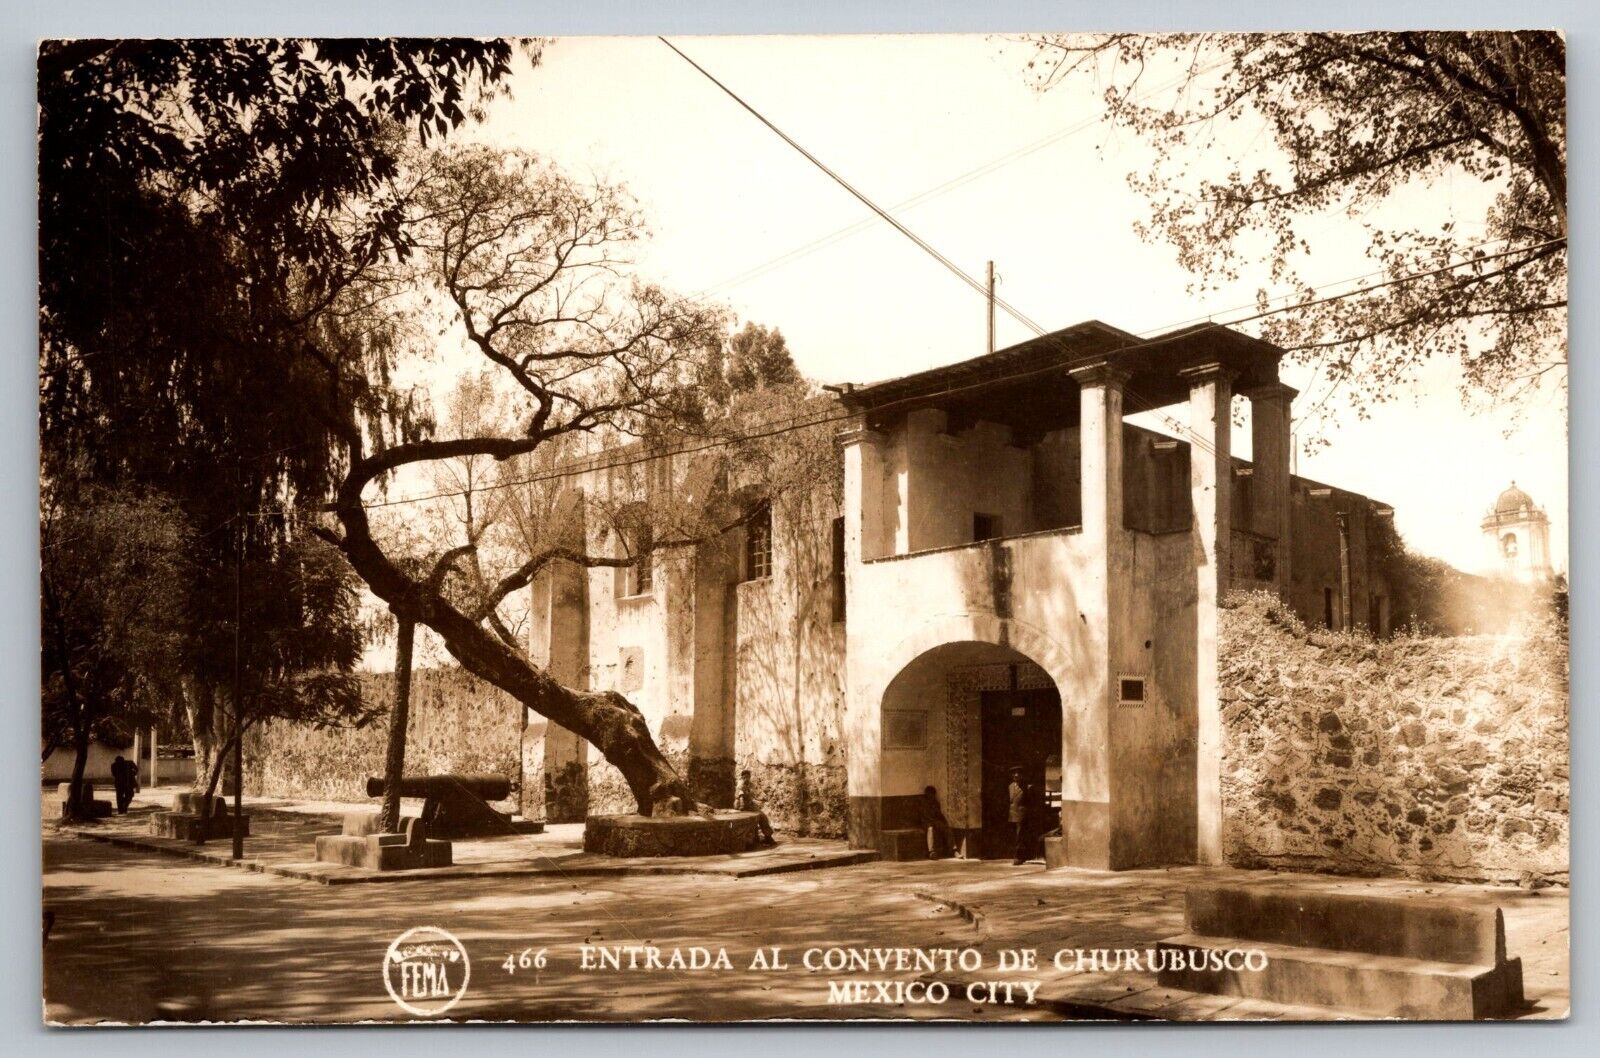 Entrance To The Convento De Churubusco. Mexico City Real Photo Postcard. RPPC